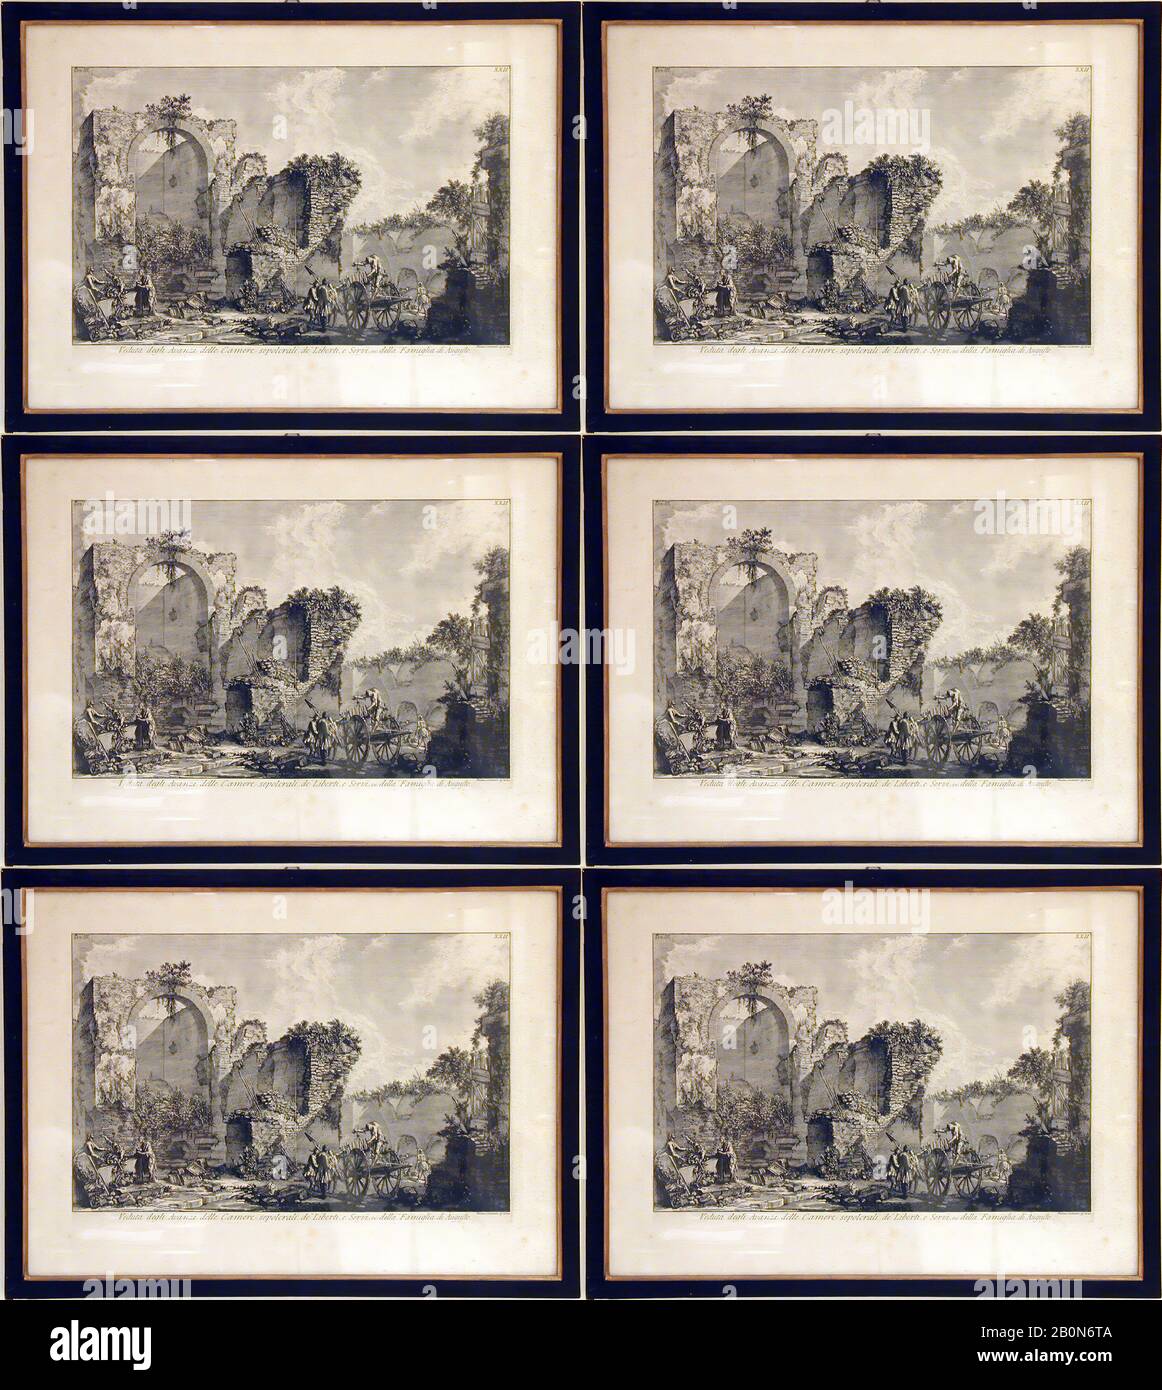 Sechs Gravuren und eine Karte, 18. Jahrhundert, Tinte auf Papier, 1. Gesamt: 23 x 30 Zoll (58,4 x 76,2 cm), 2. Gesamt: 19 x 23 Zoll (48,3 x 58,4 cm), 3. Gesamt: 19 x 23 Zoll (48,3 x 58,4 cm), 4. Gesamt: 19 x 23 Zoll (48,3 x 58,4 cm), 5. Gesamt: 13 1/2 x 17 3/4 Zoll (34,3 x 45,1 cm), 6. Gesamt: 18 1/2 x 11 3/4 Zoll (47 x 29,8 cm), 7. Gesamt: 21 3/4 x 24 1/2 Zoll (55,2 x 62,2 cm), Miscellaneouus-Paintings Stockfoto